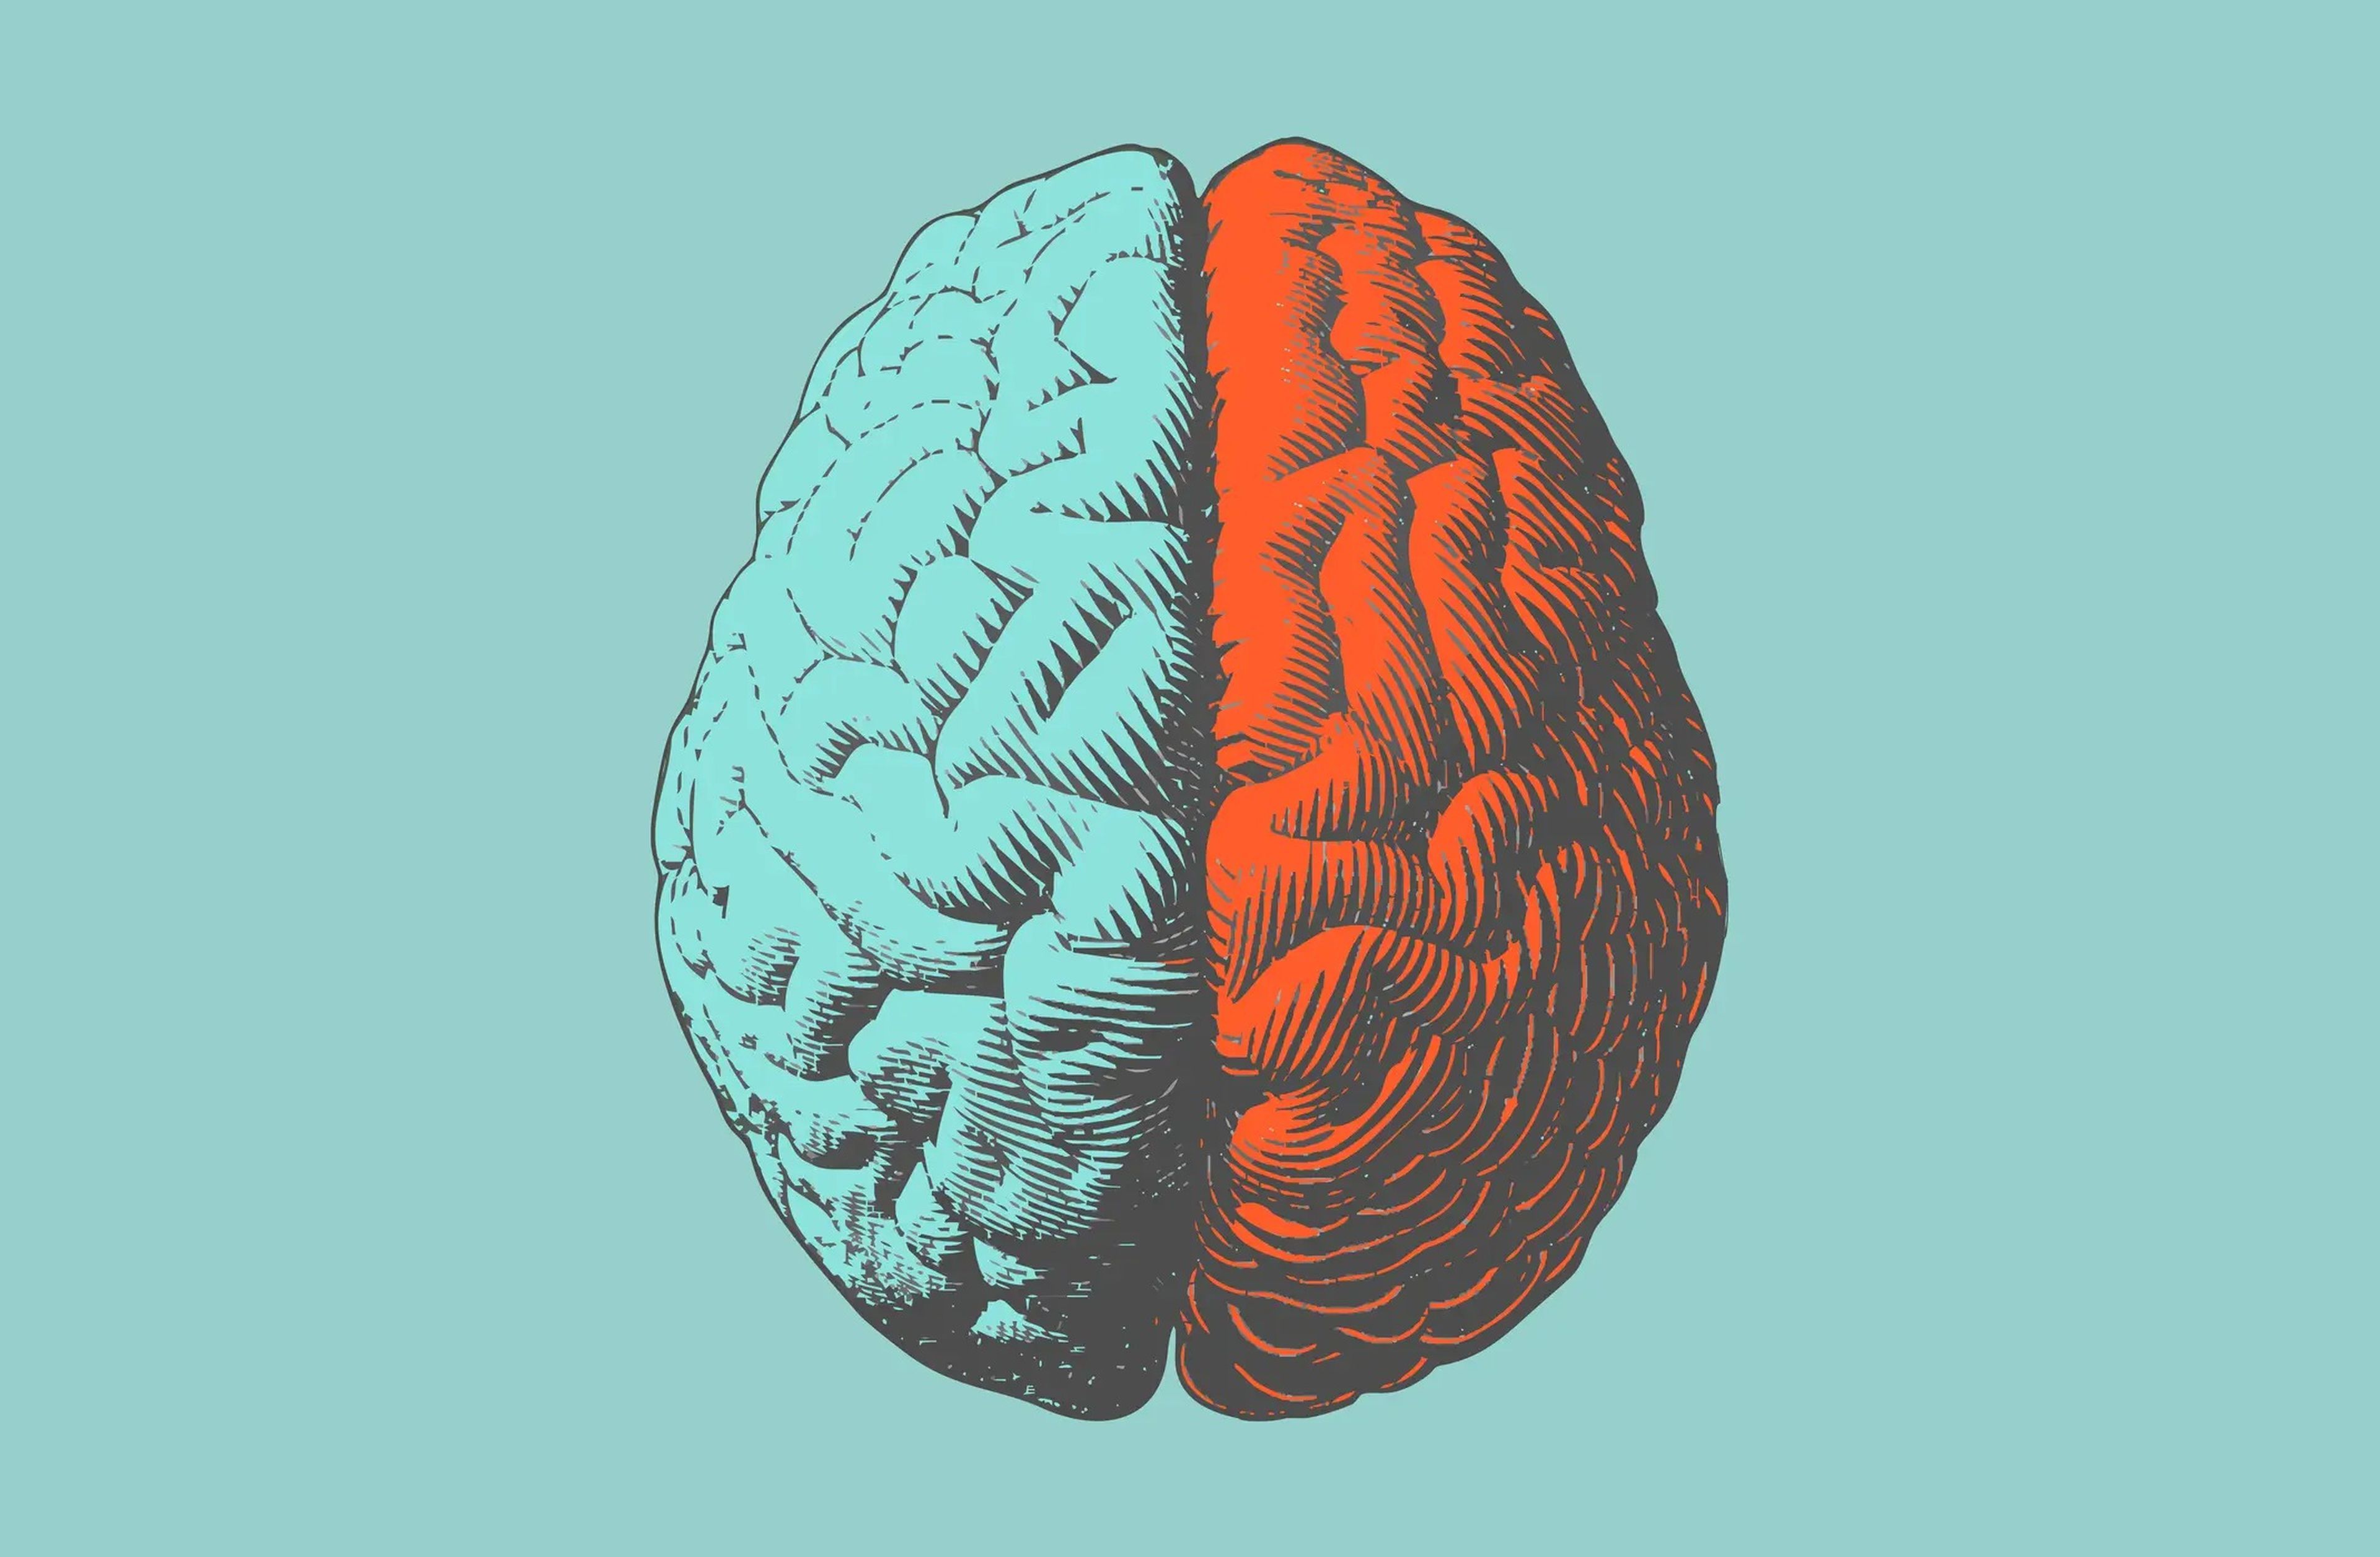 La lateralización cerebral describe la idea de que tenemos dos hemisferios diferentes en el cerebro y cada mitad es responsable de tareas y funciones distintas.